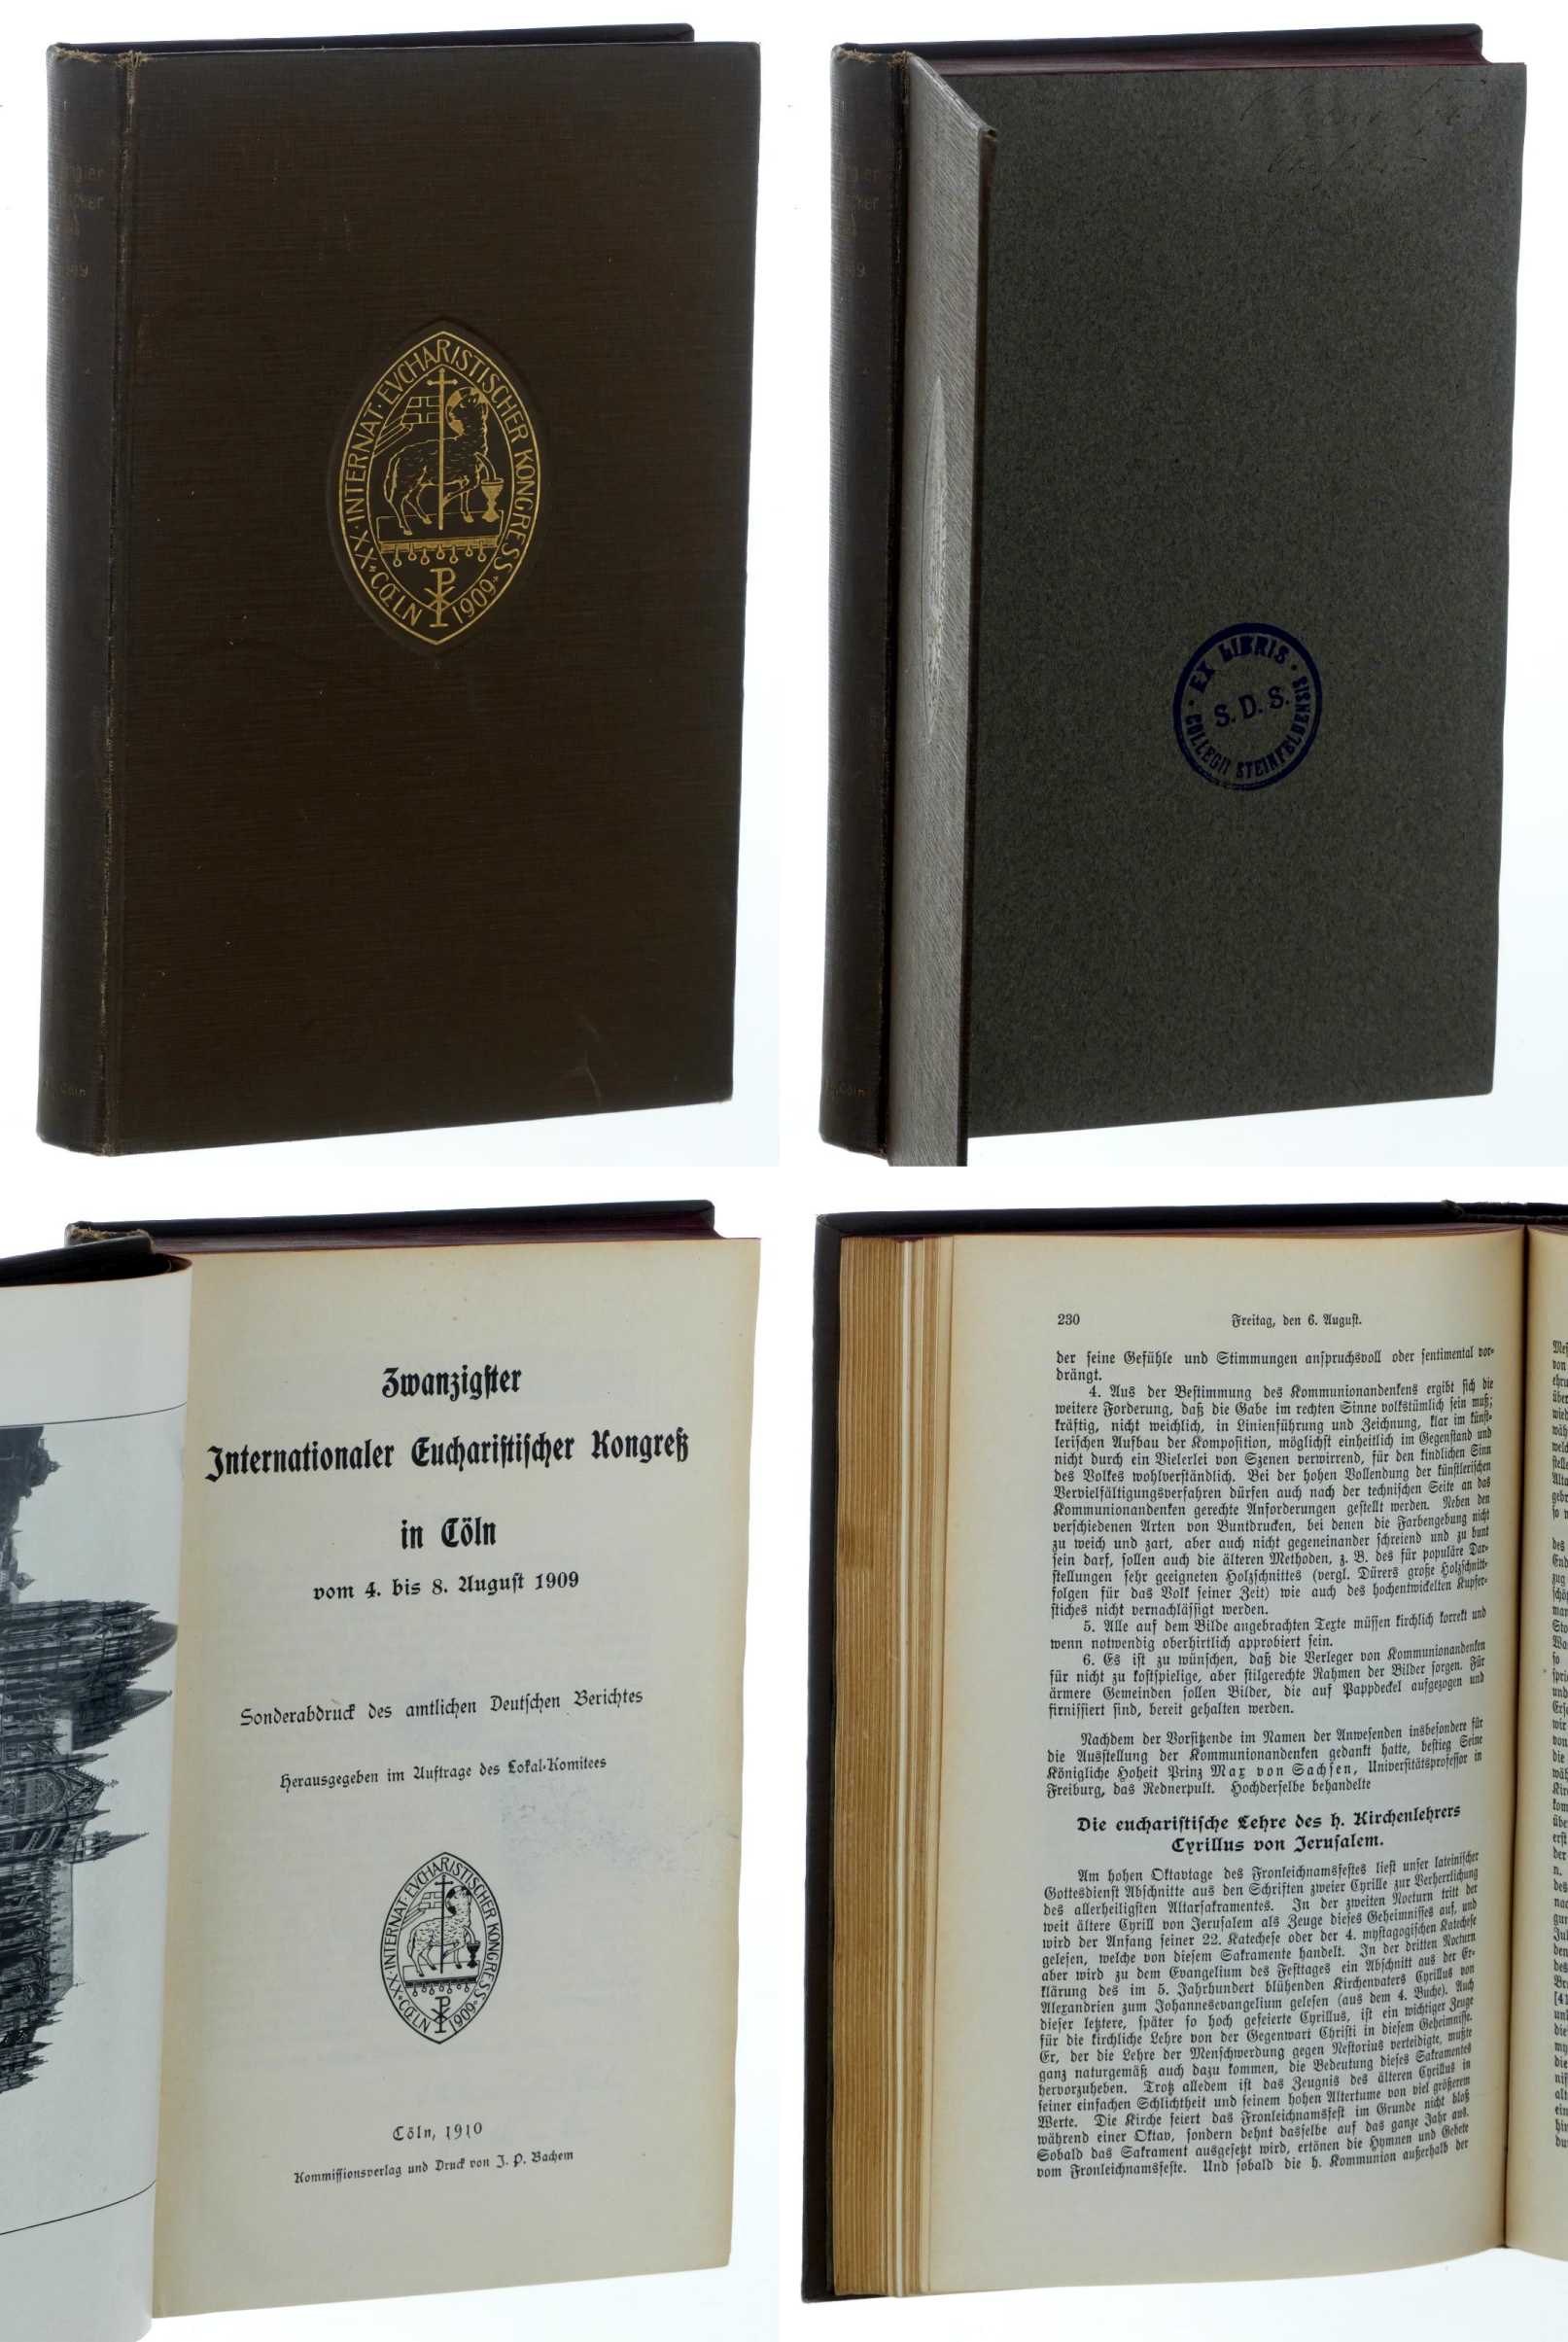   Zwanzigster Internationaler Eucharistischer Kongreß in Cöln vom 4. bis 8. August 1909. Amtl. Bericht. Hrsg. i. A. des Lokal-Komitees. 